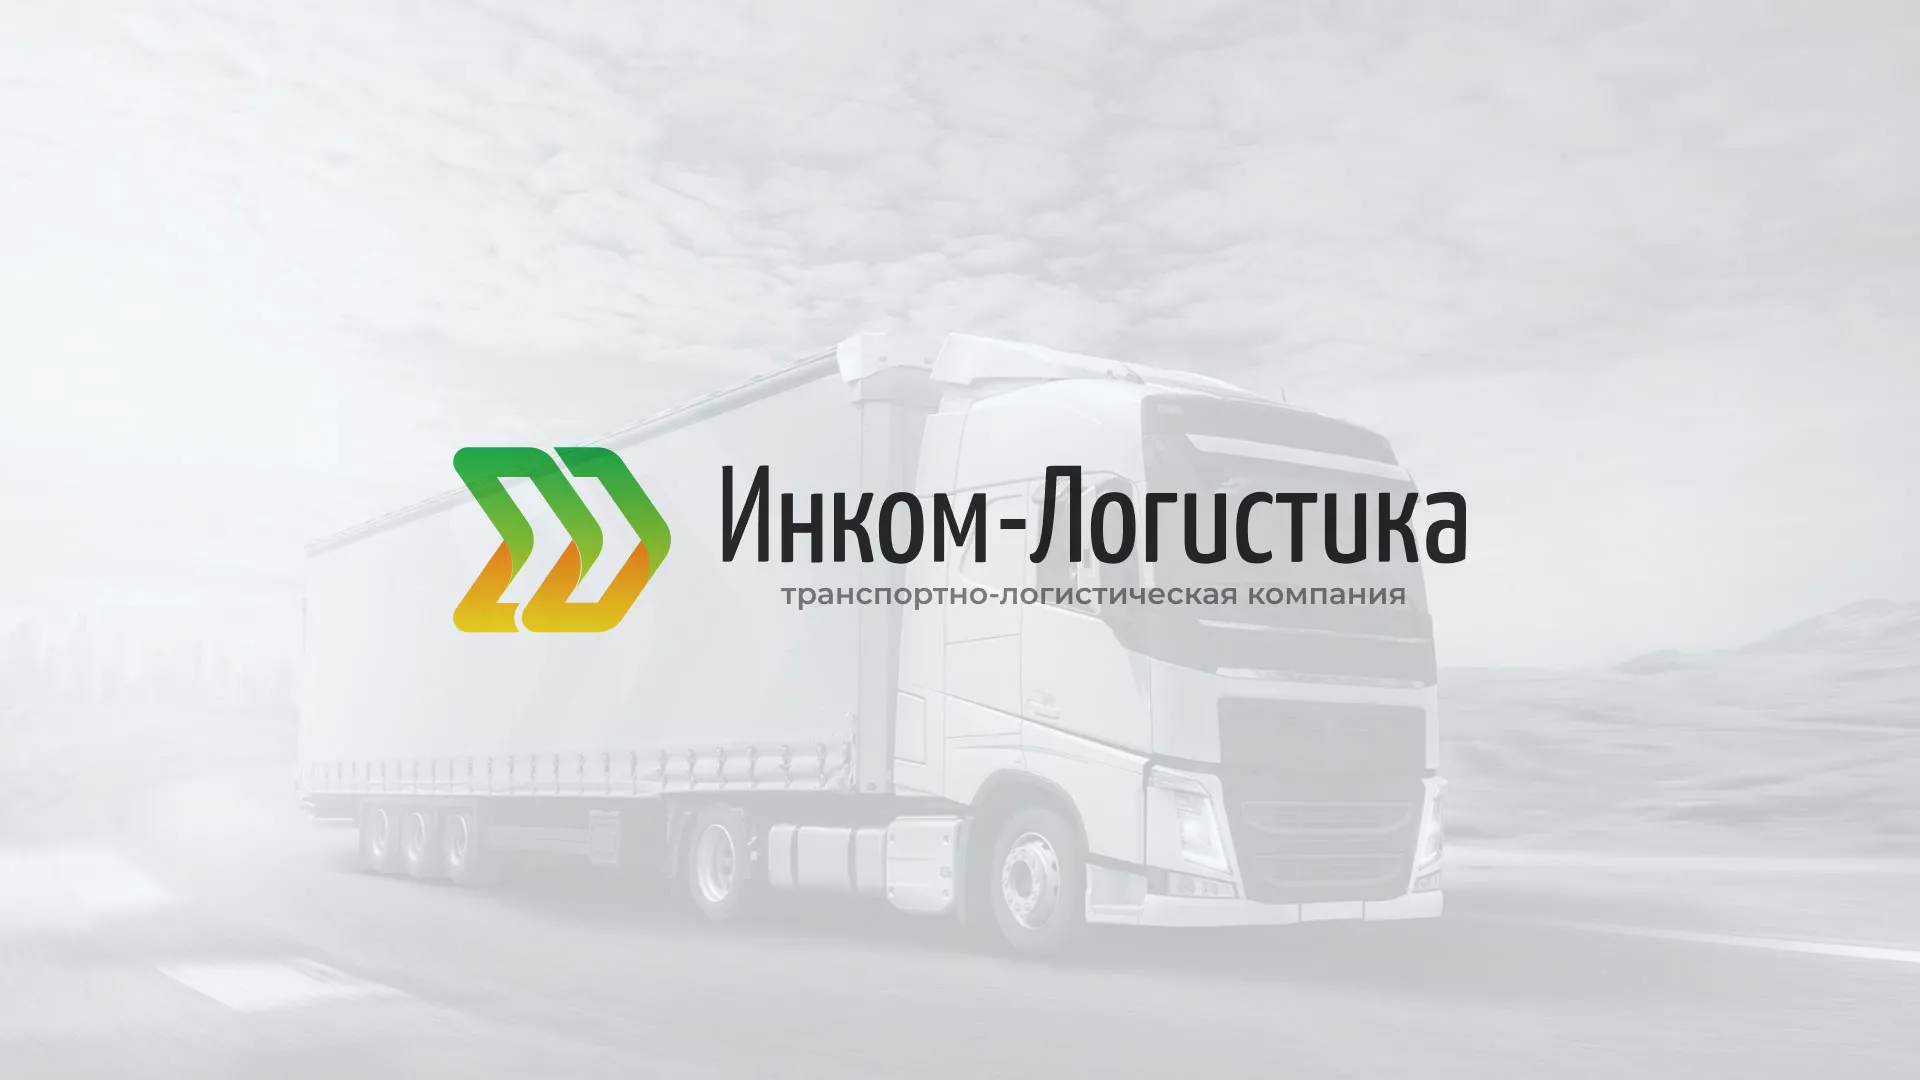 Разработка логотипа и сайта компании «Инком-Логистика» в Вышнем Волочке